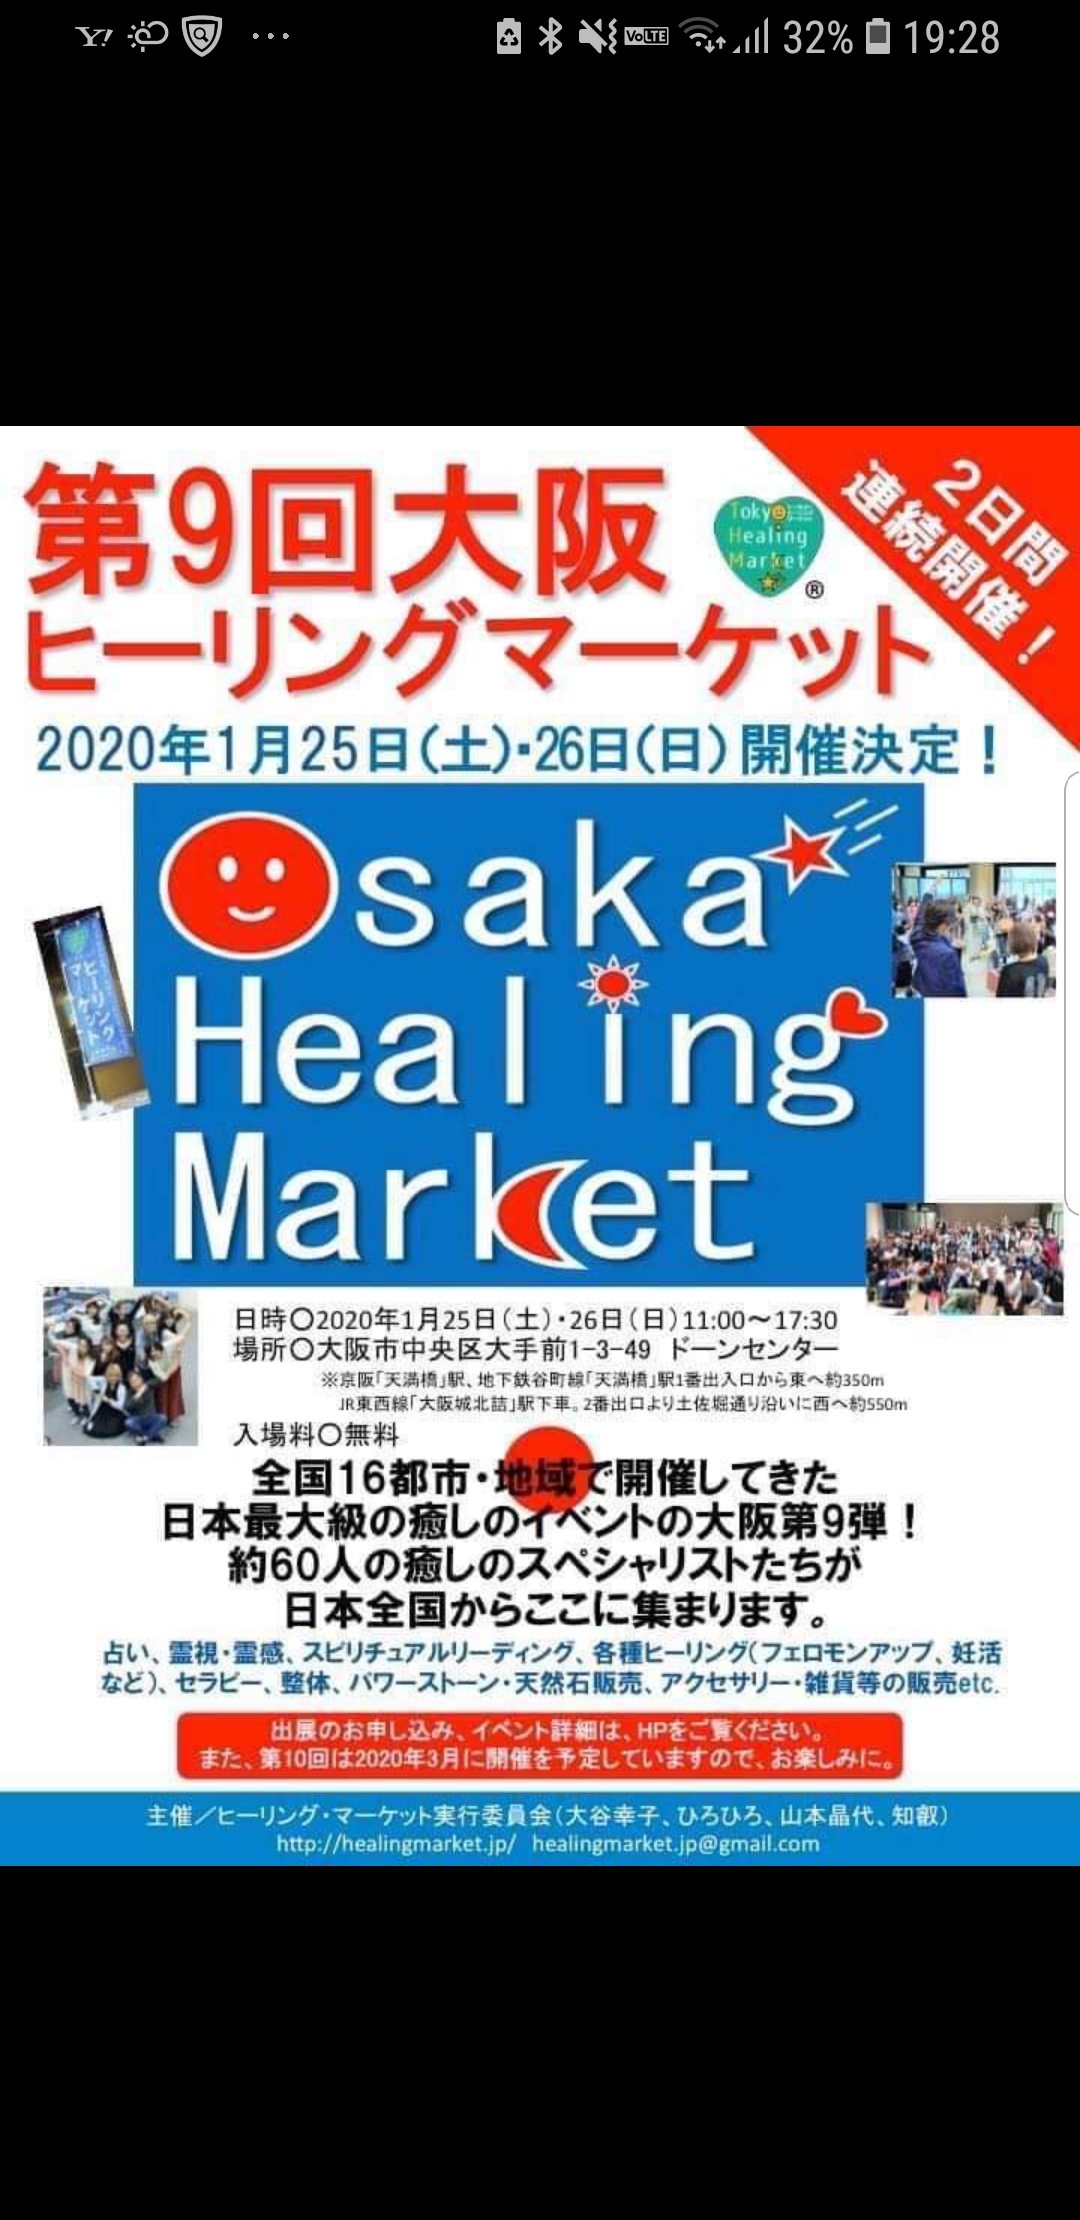 明日‼️明後日‼️1月25日26日開催‼️大阪ヒーリングマーケット開催のお知らせ‼️